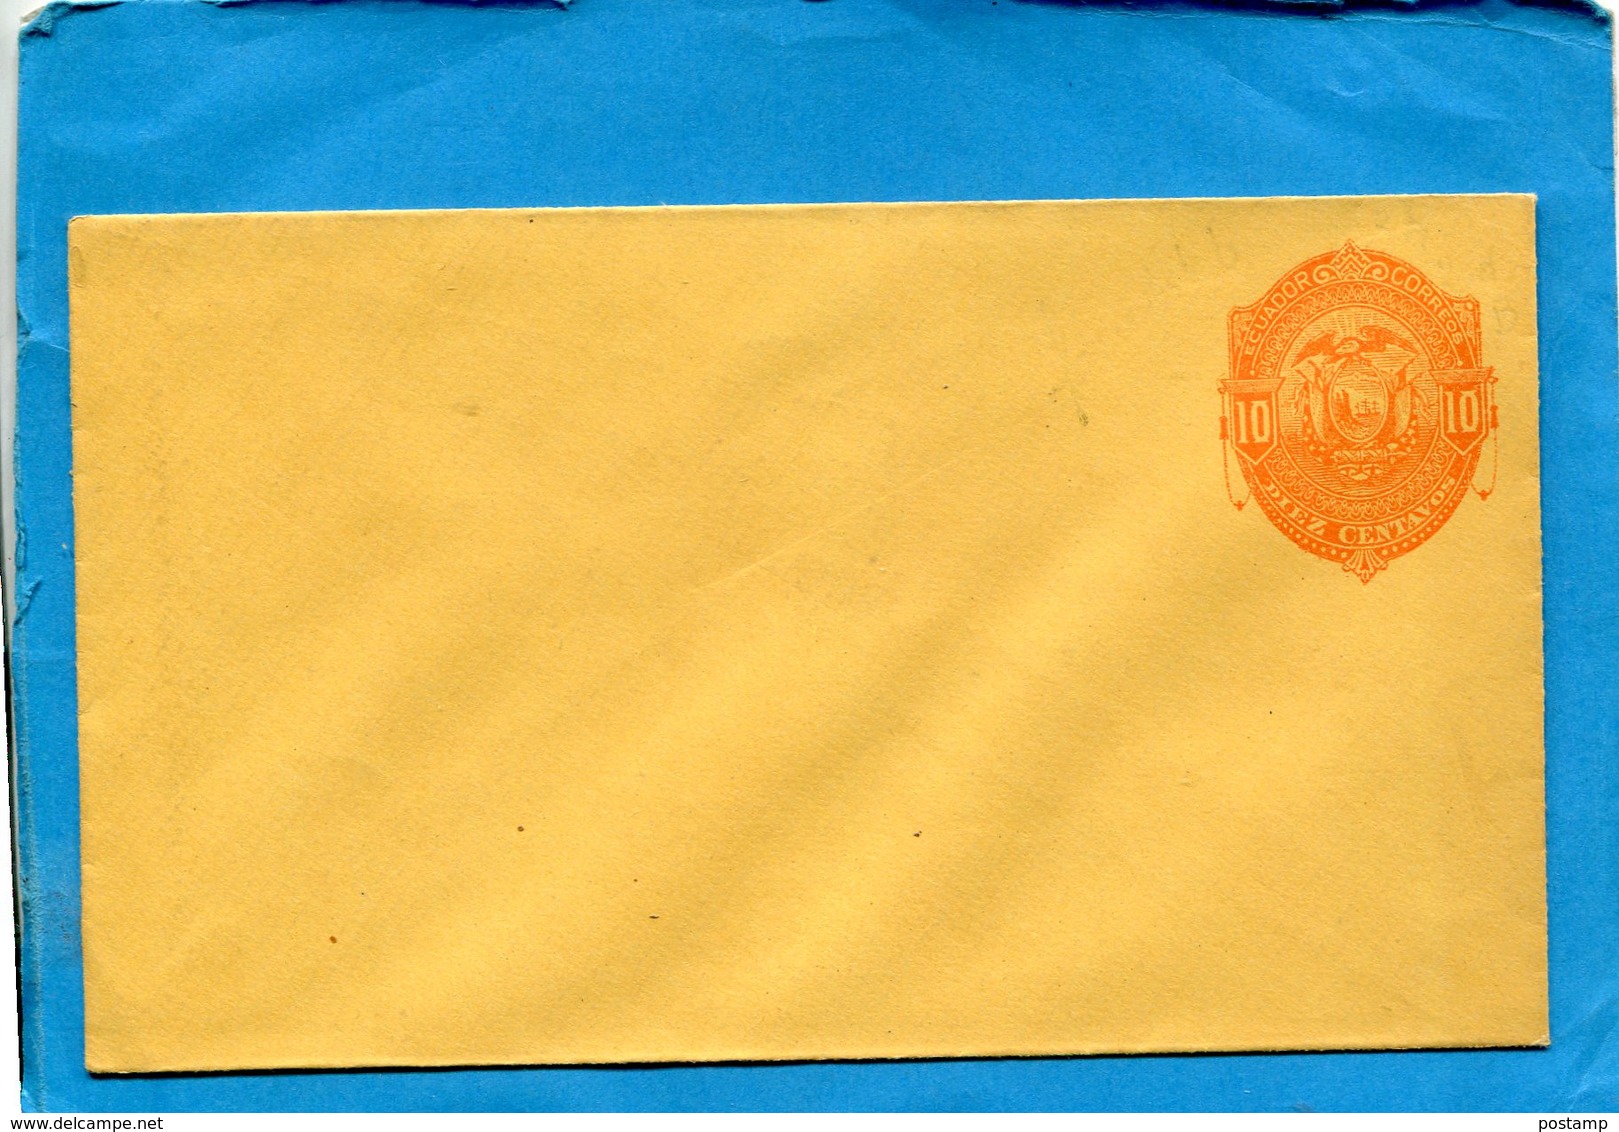 EQUATEUR- Enveloppe Jaune Entier Postal Stationnery- 1895-10 C  Rouge-armoiries - Equateur